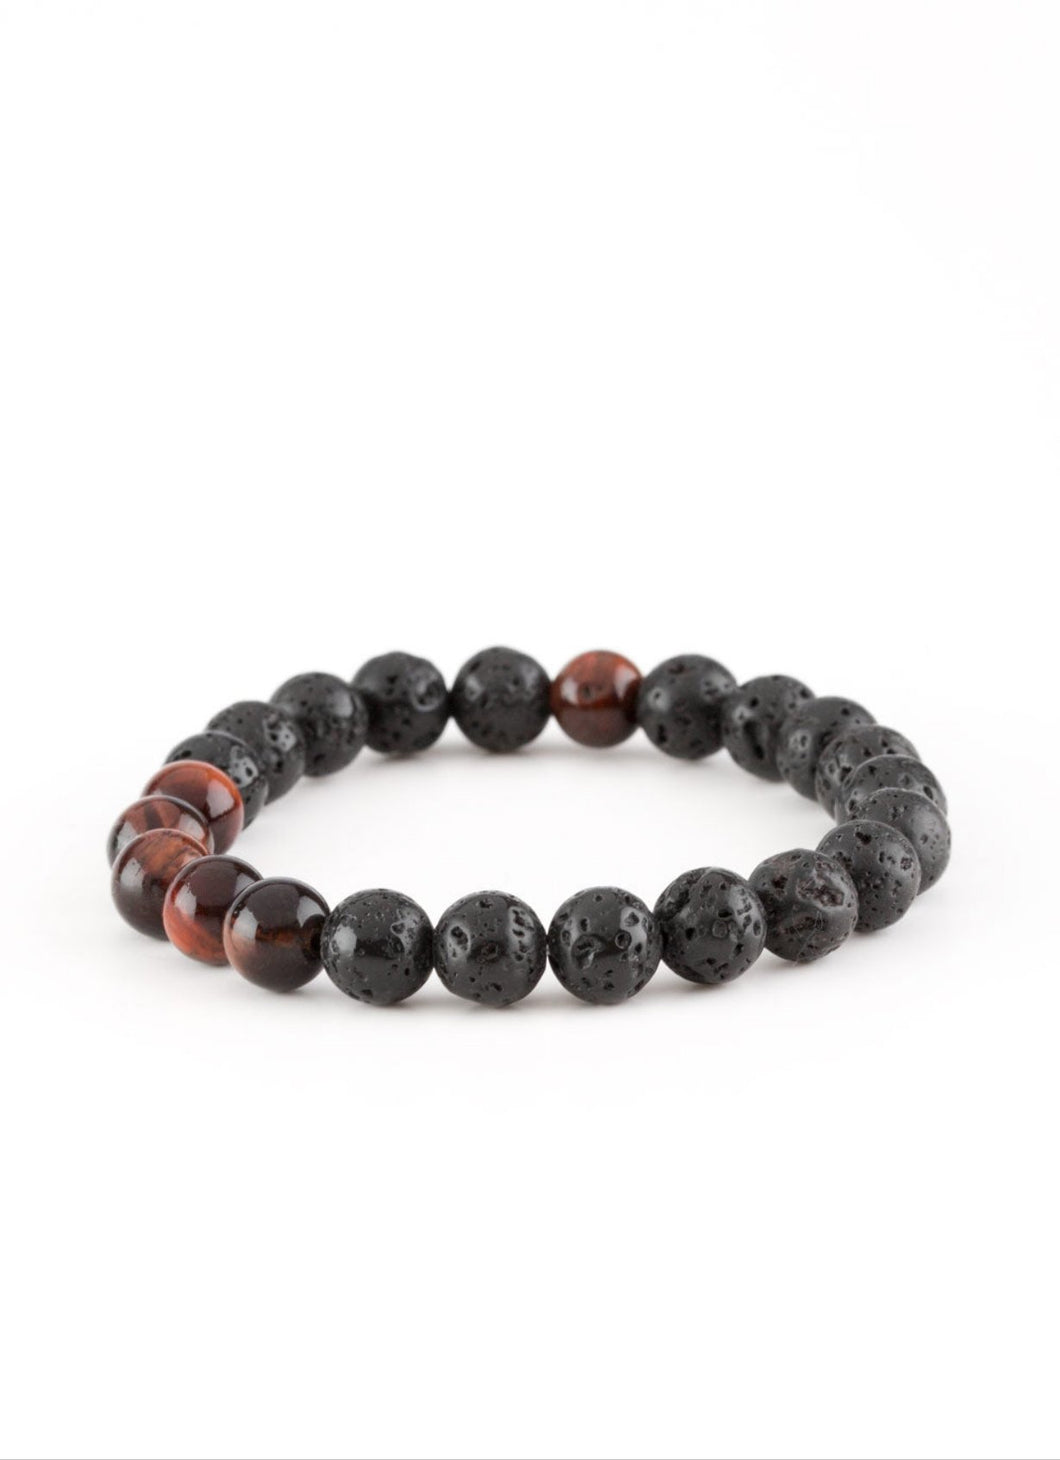 Meditation Brown and Black Urban/Unisex Bracelet